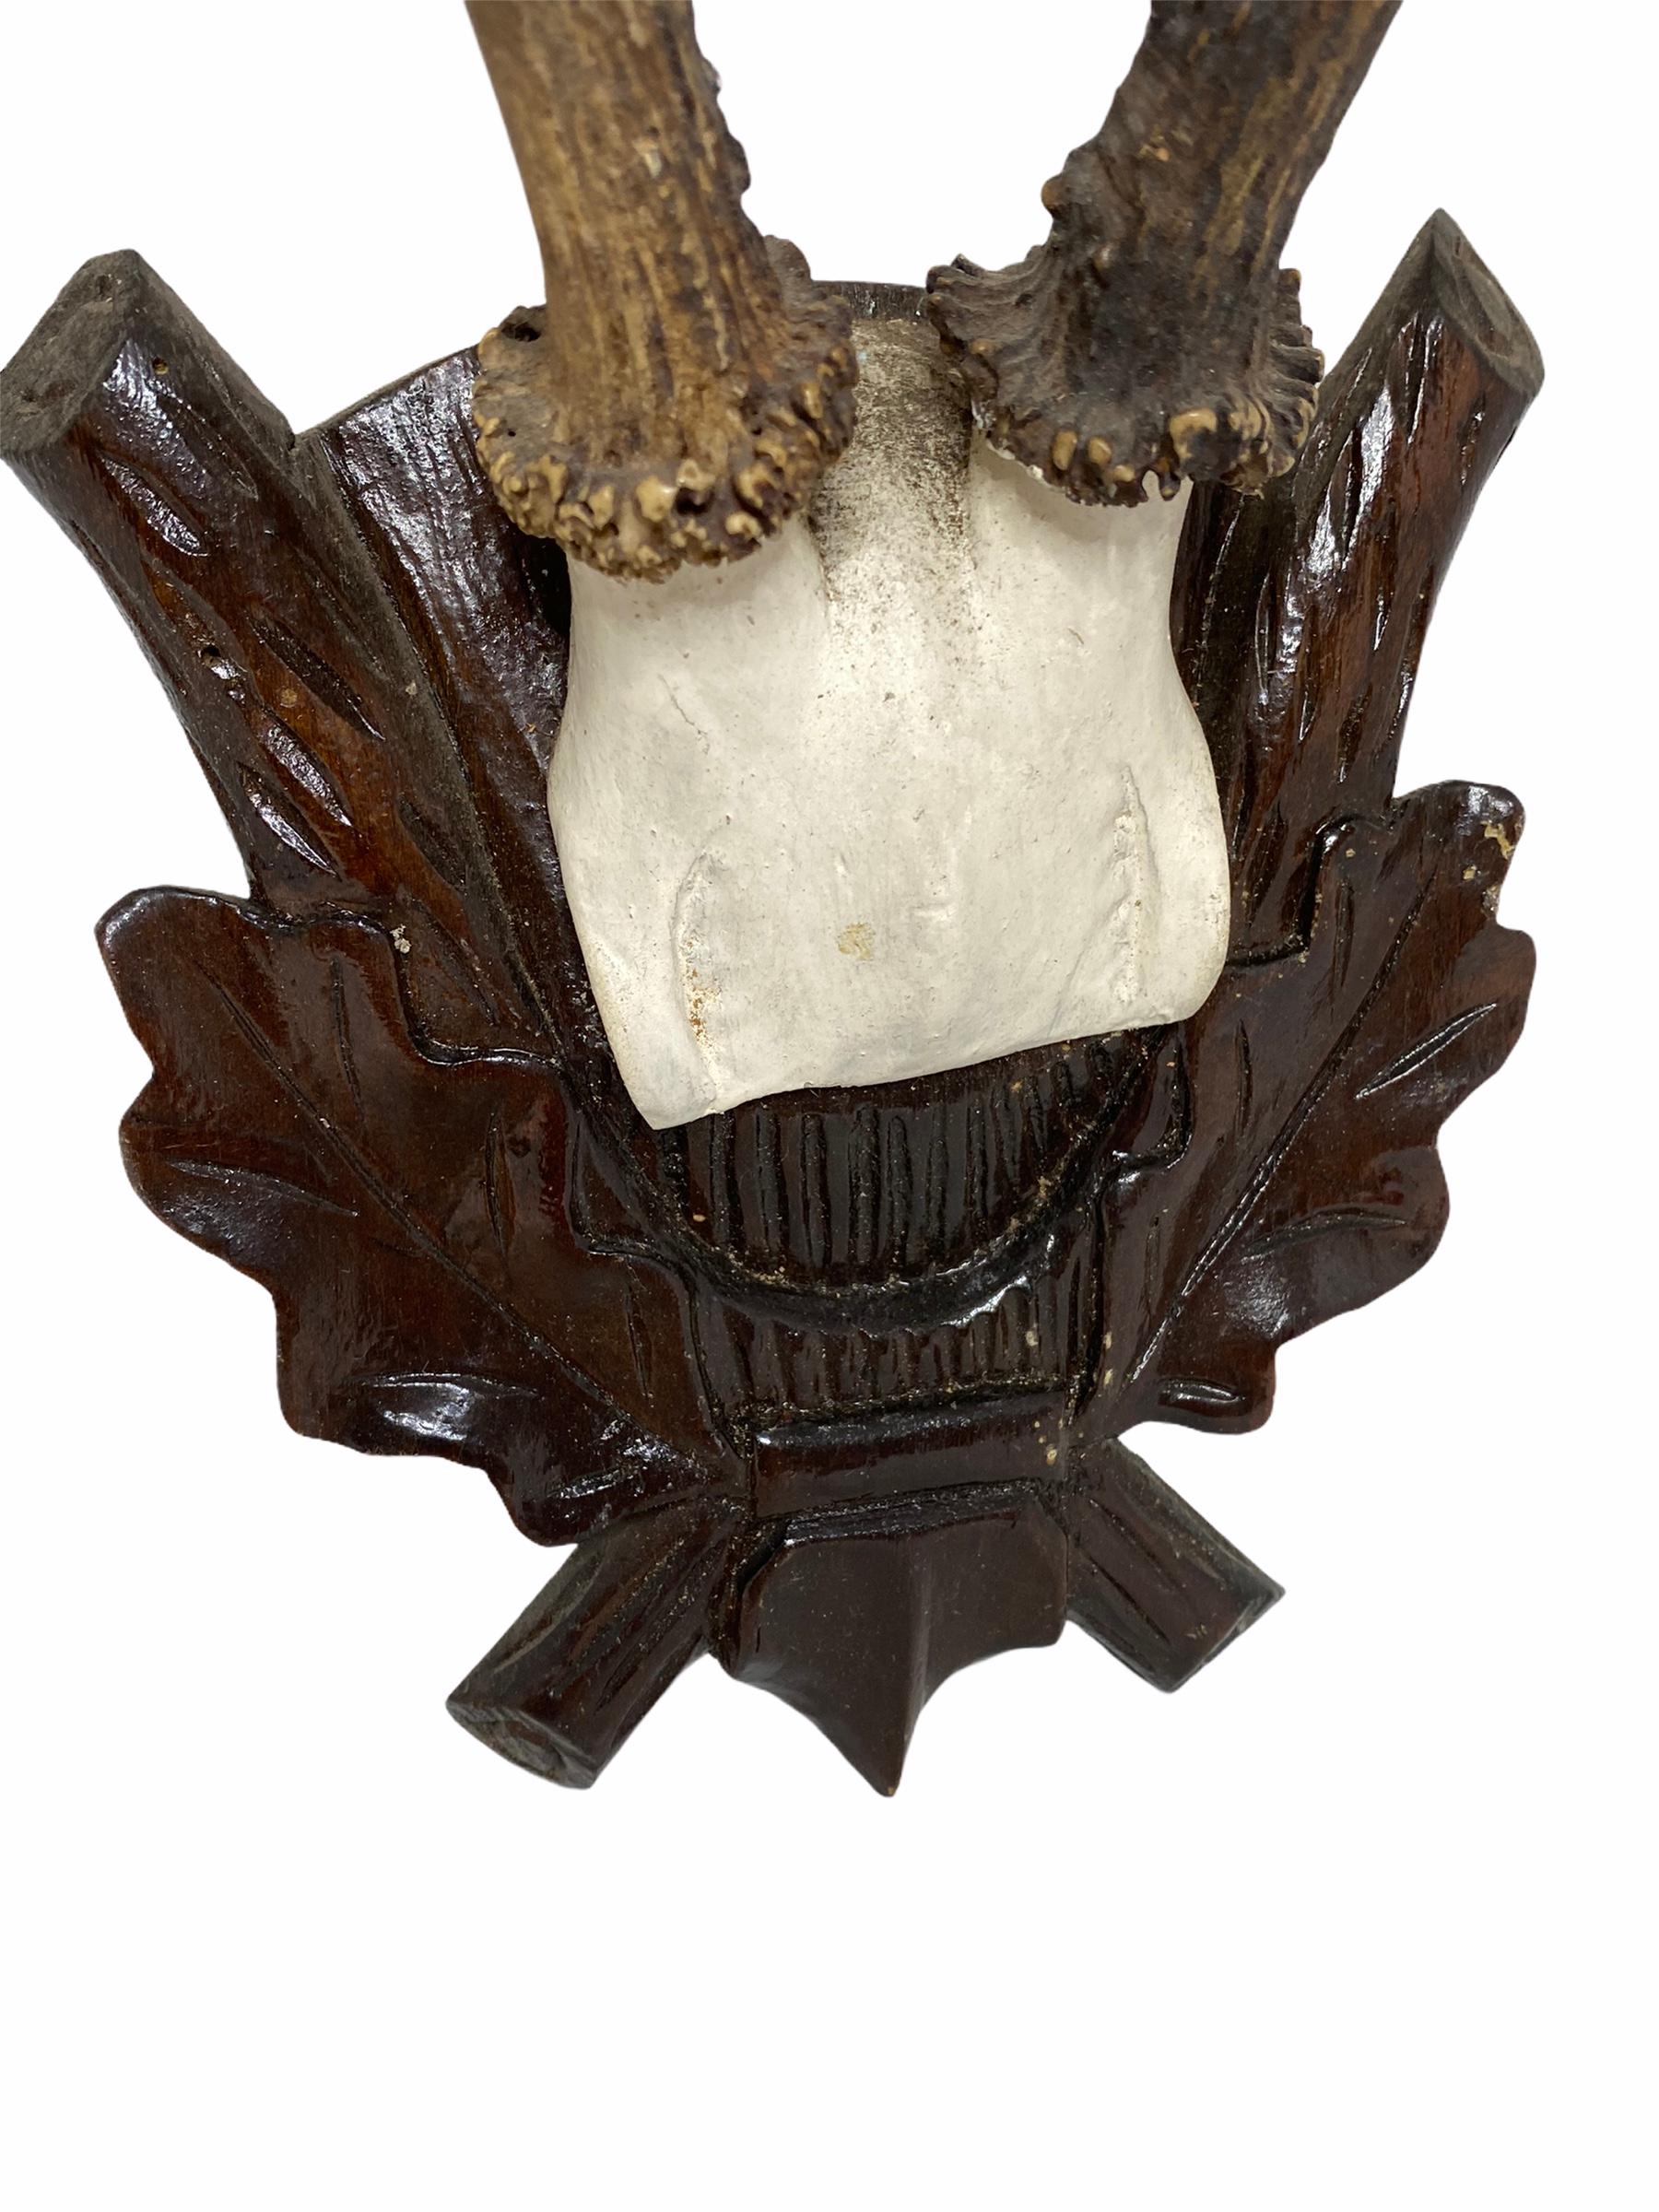 19th Century Antique Black Forest Deer Antler Trophy on Wood Carved Plaque, Austria, 1890s